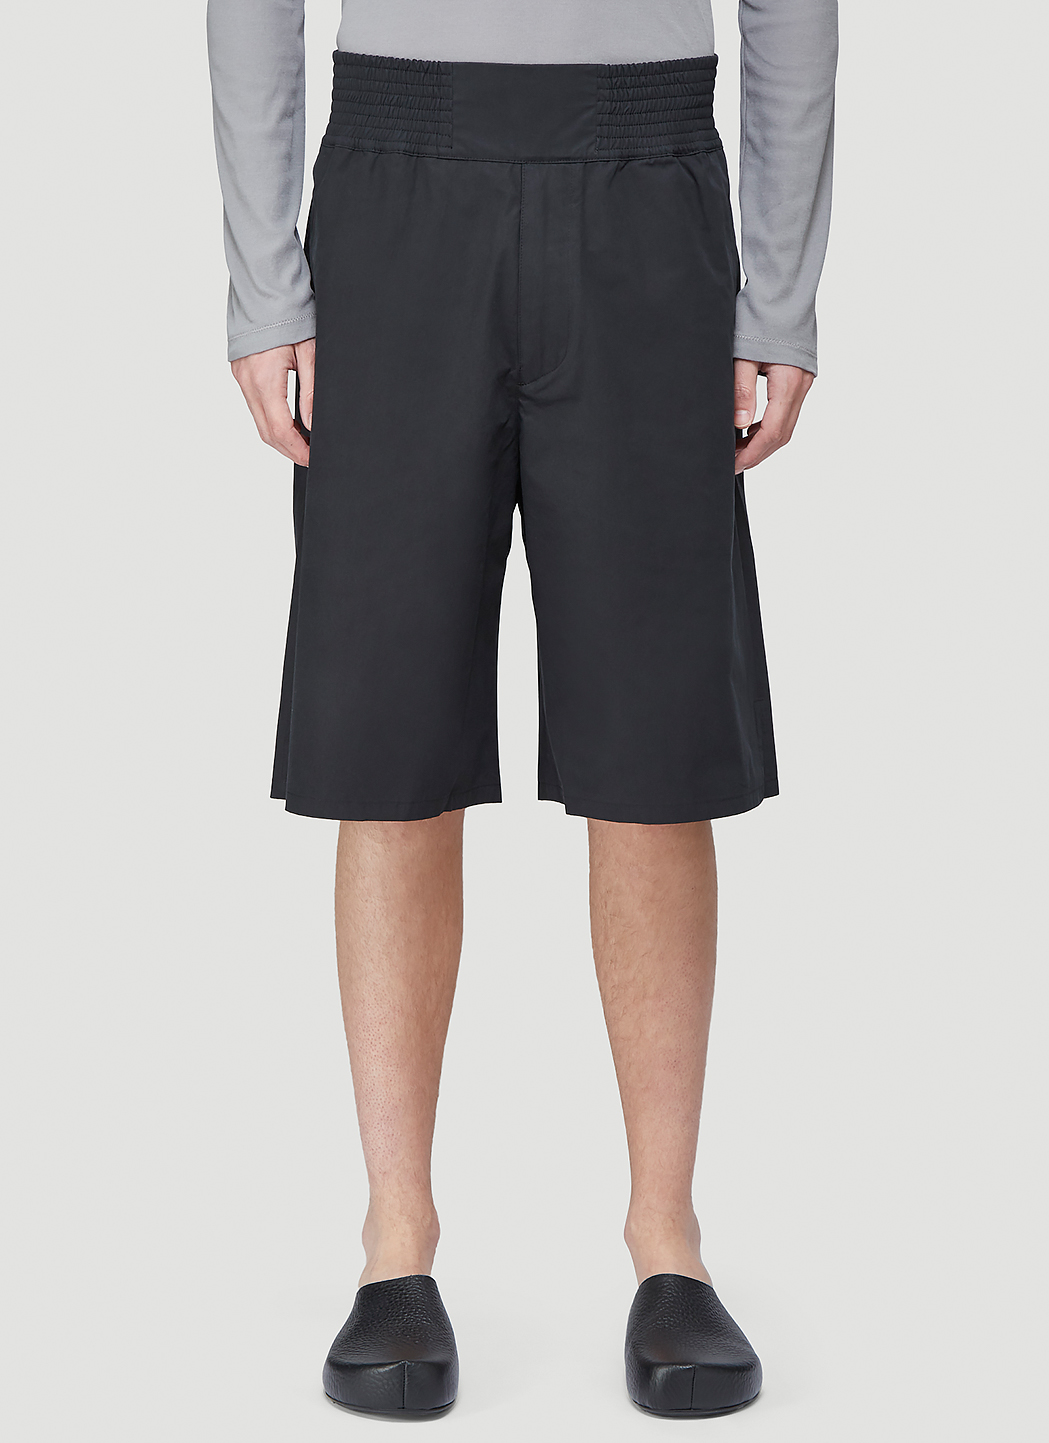 OAMC Ali Shorts in Black | LN-CC®